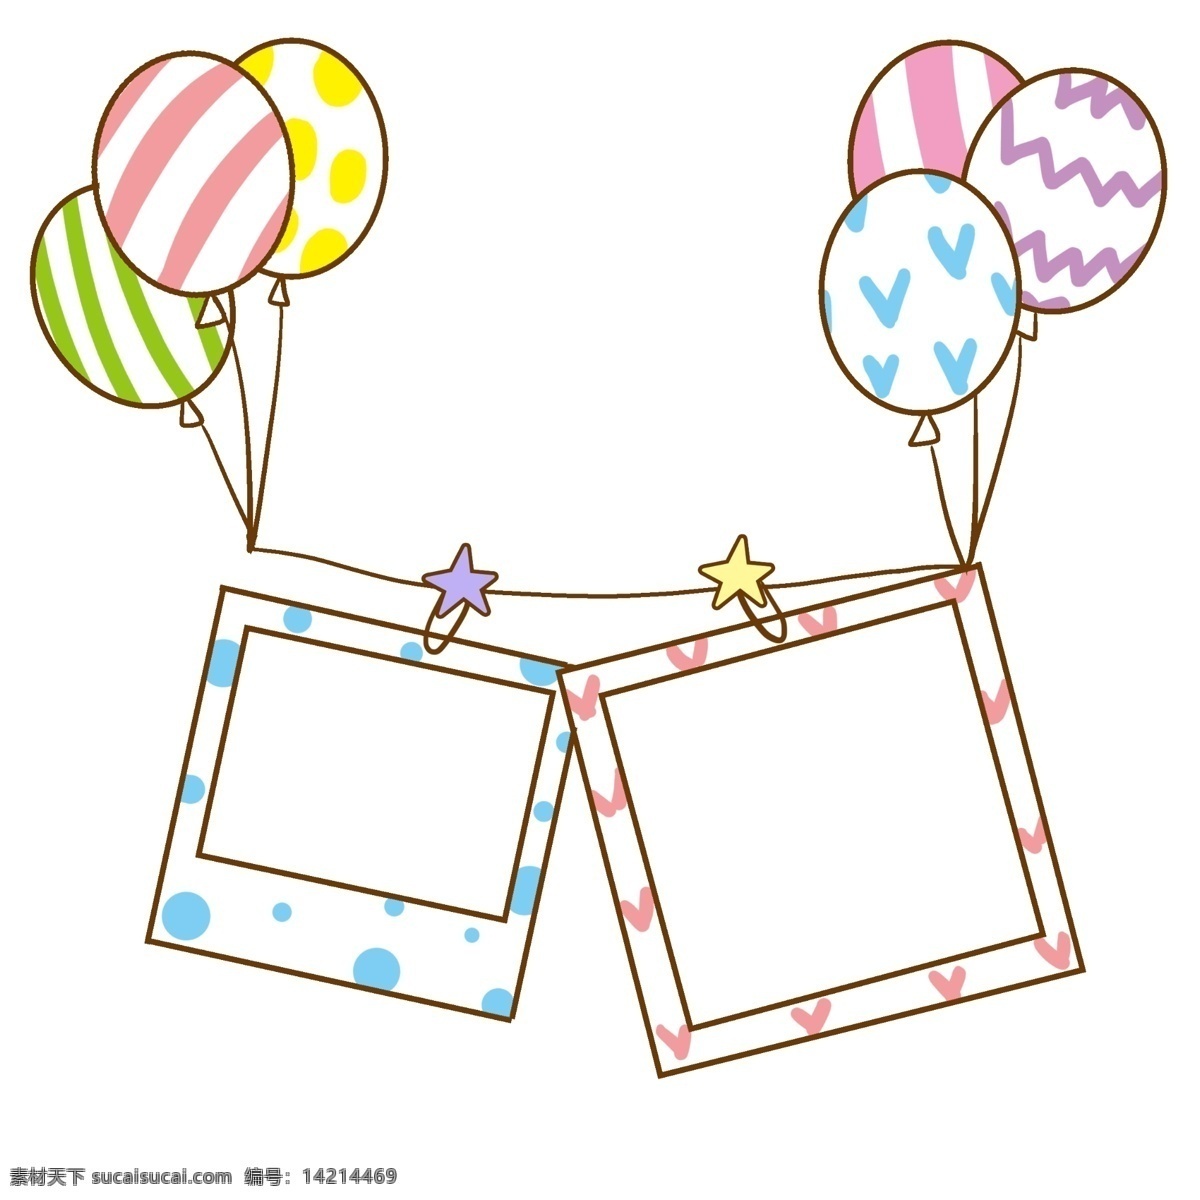 气球 相框 卡通 插画 气球的相框 框架 框子 框框 相框插画 卡通插画 简易相框 边框 正方形相框